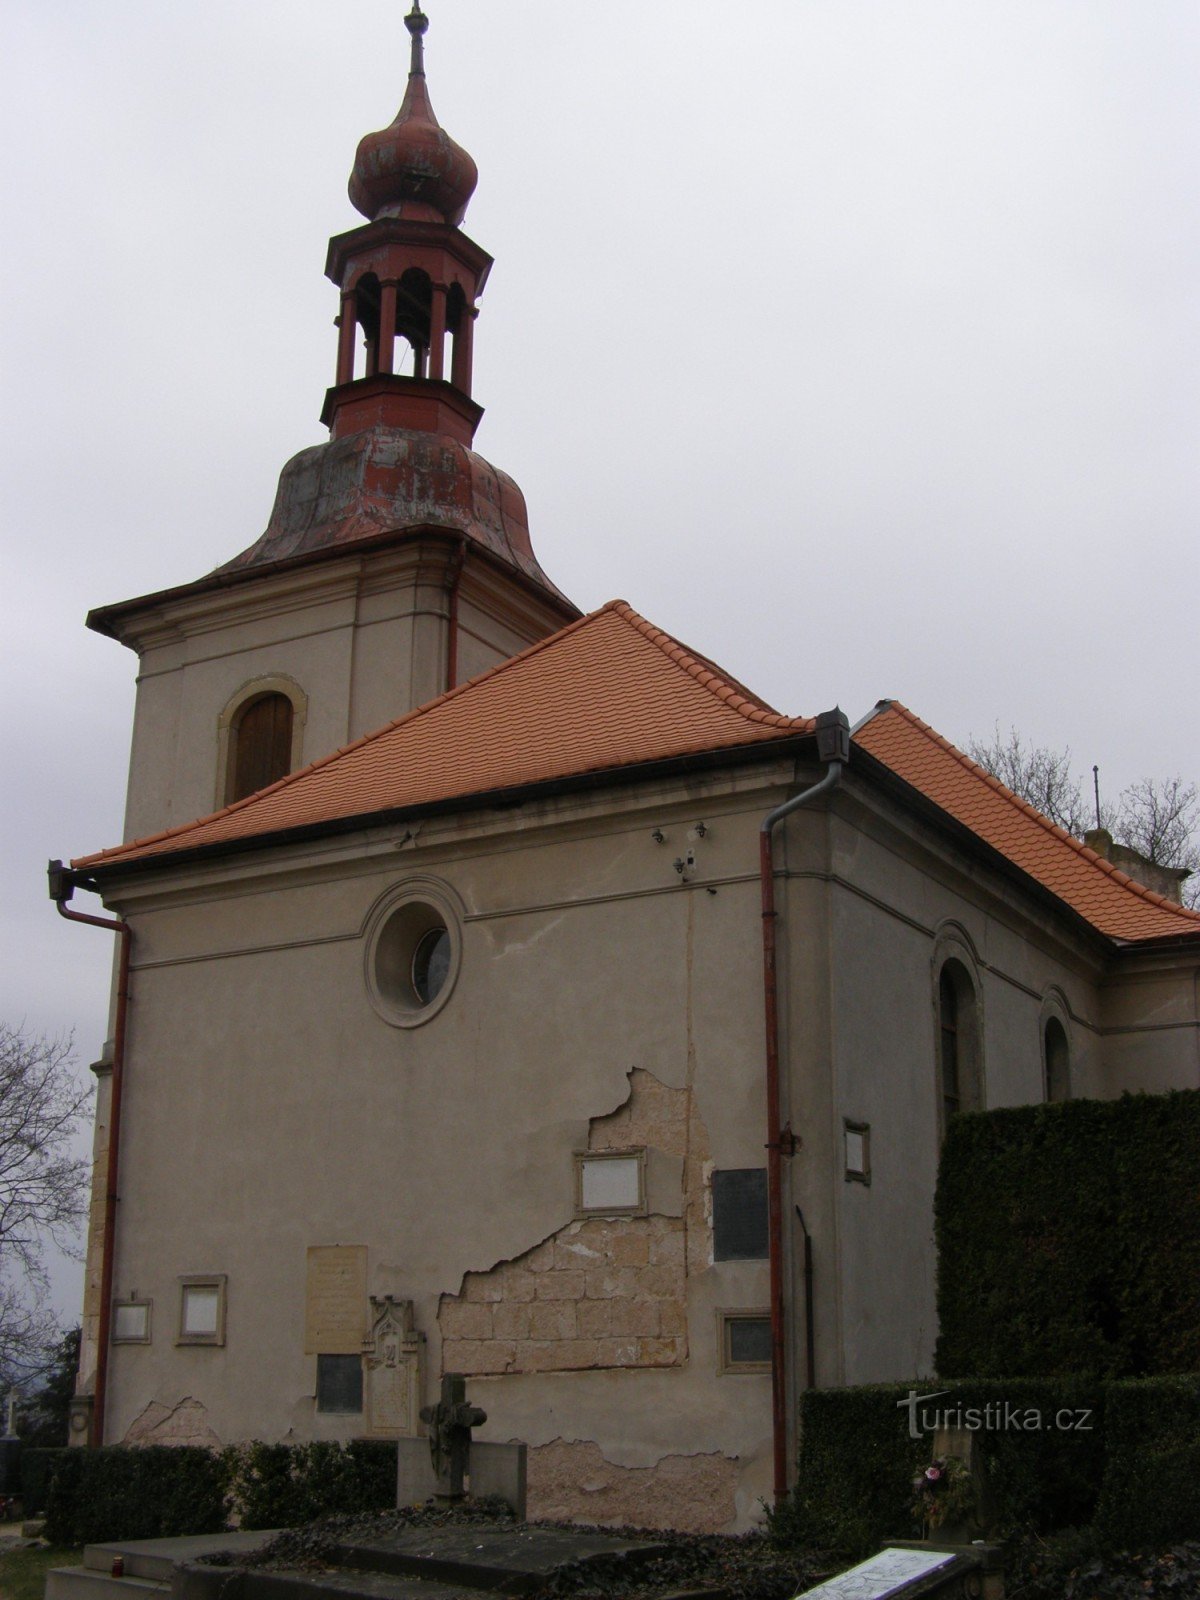 Gothard - Biserica Sf. Gothard